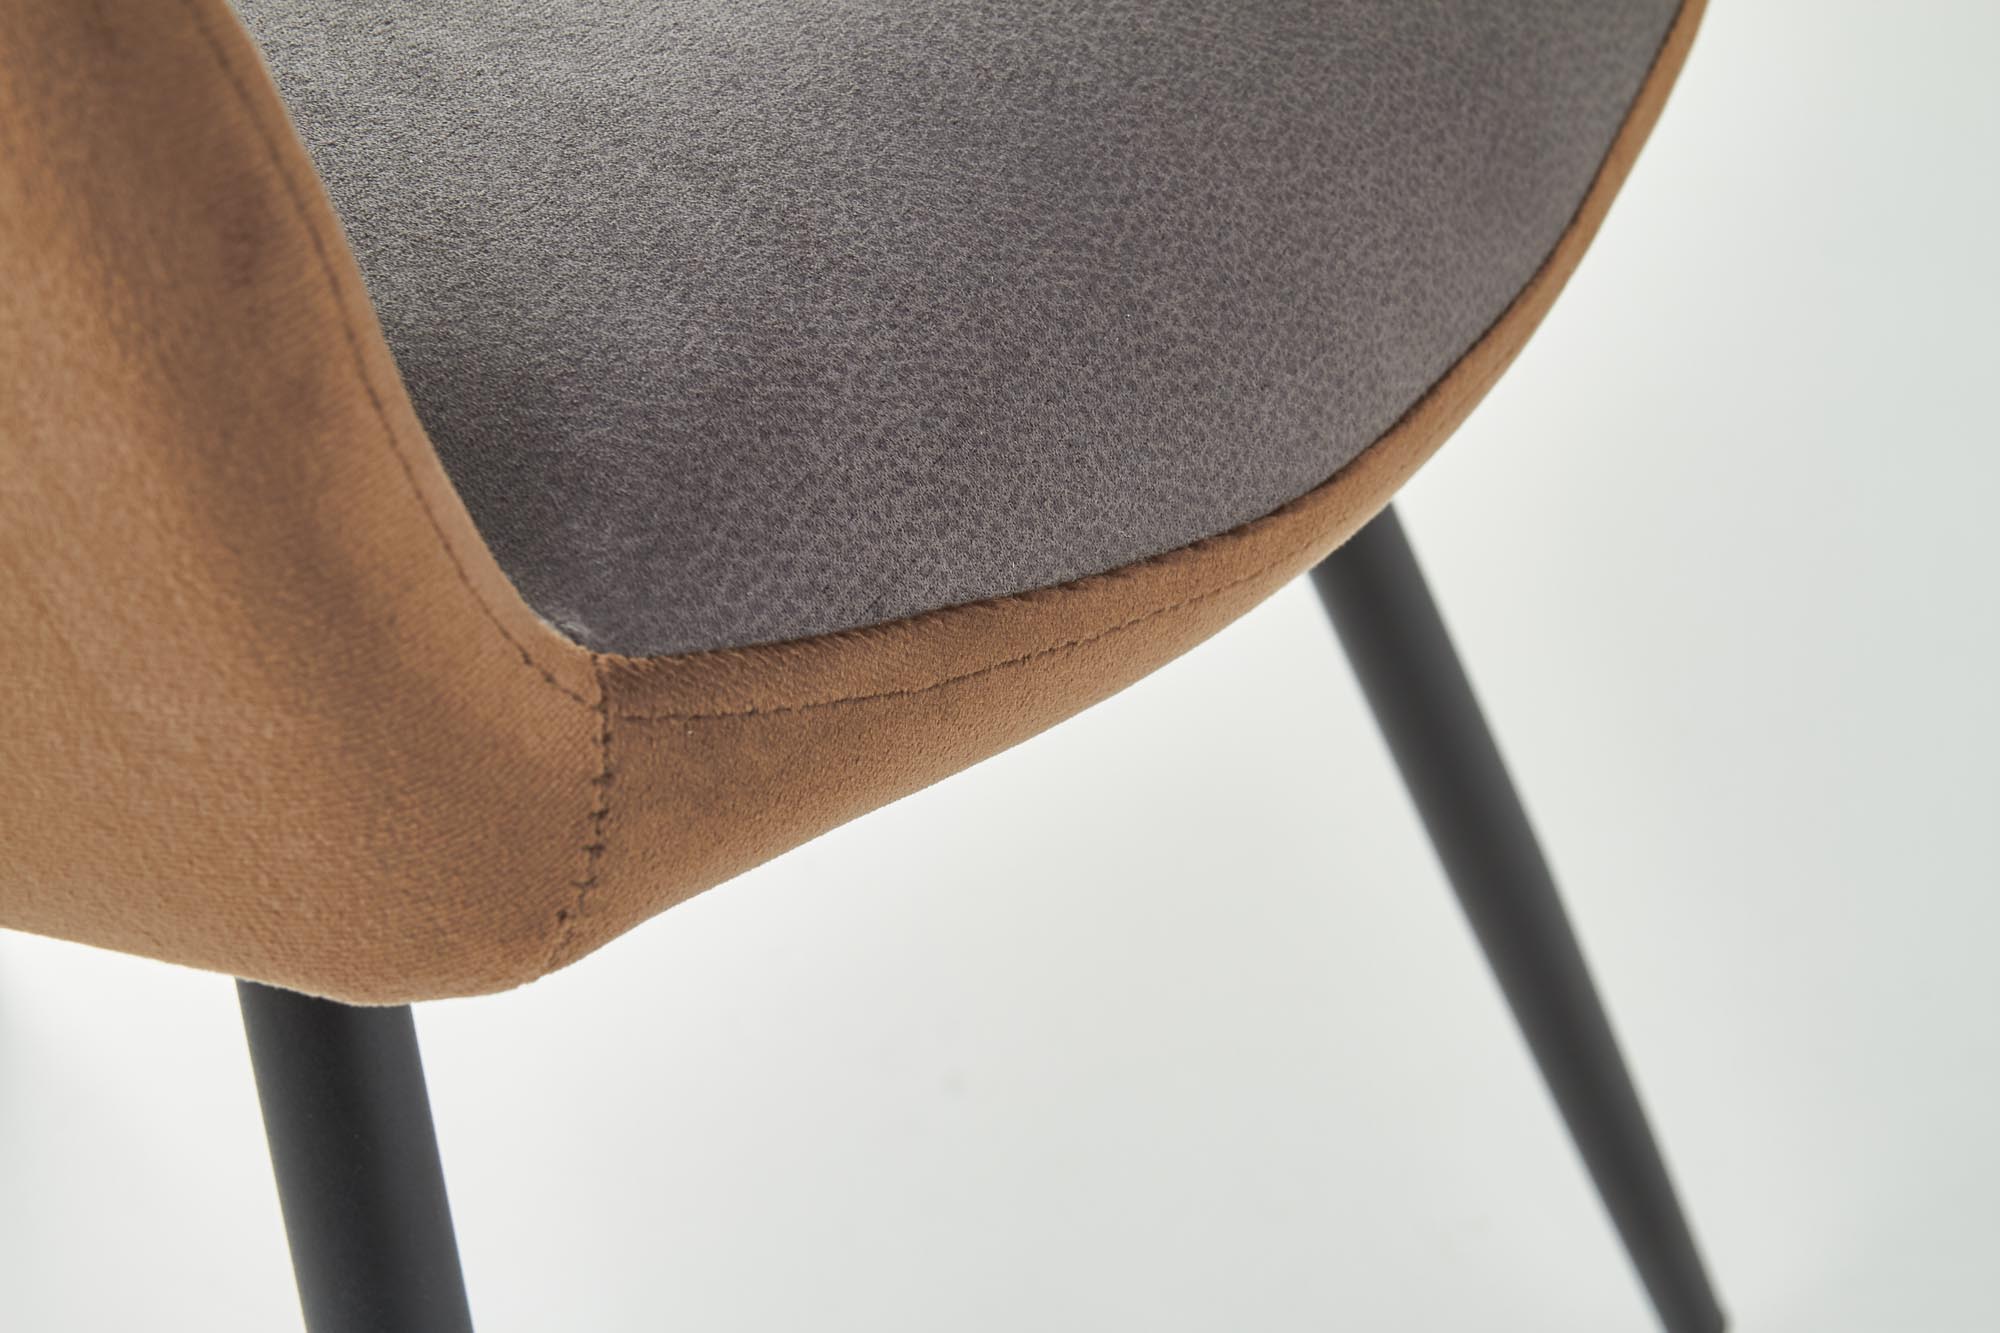 Krzesło tapicerowane K392 - popielaty / brązowy krzesło tapicerowane k392 - popielaty / brązowy